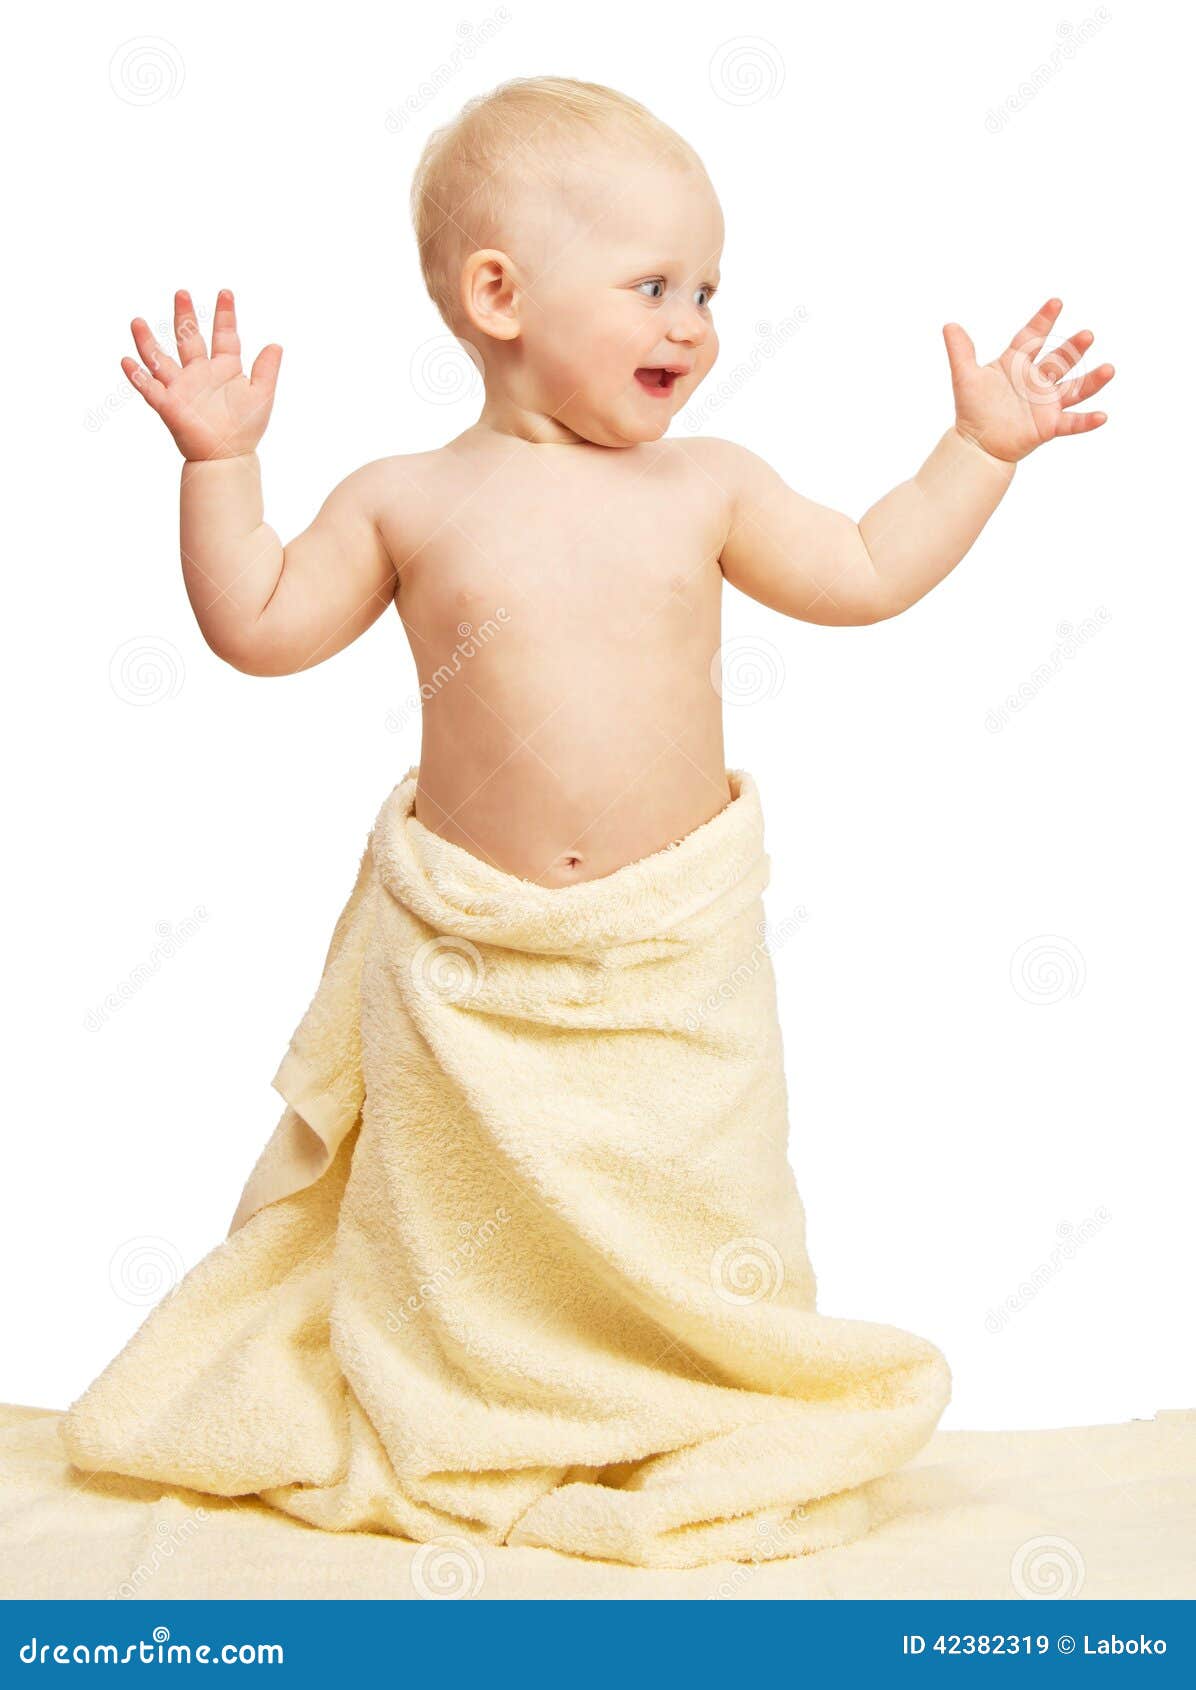 Ходит в полотенце. Малыш в полотенце. Фотосессия малыша в полотенце. Дитя в полотенце. Младенец улыбающийся с полотенцем.